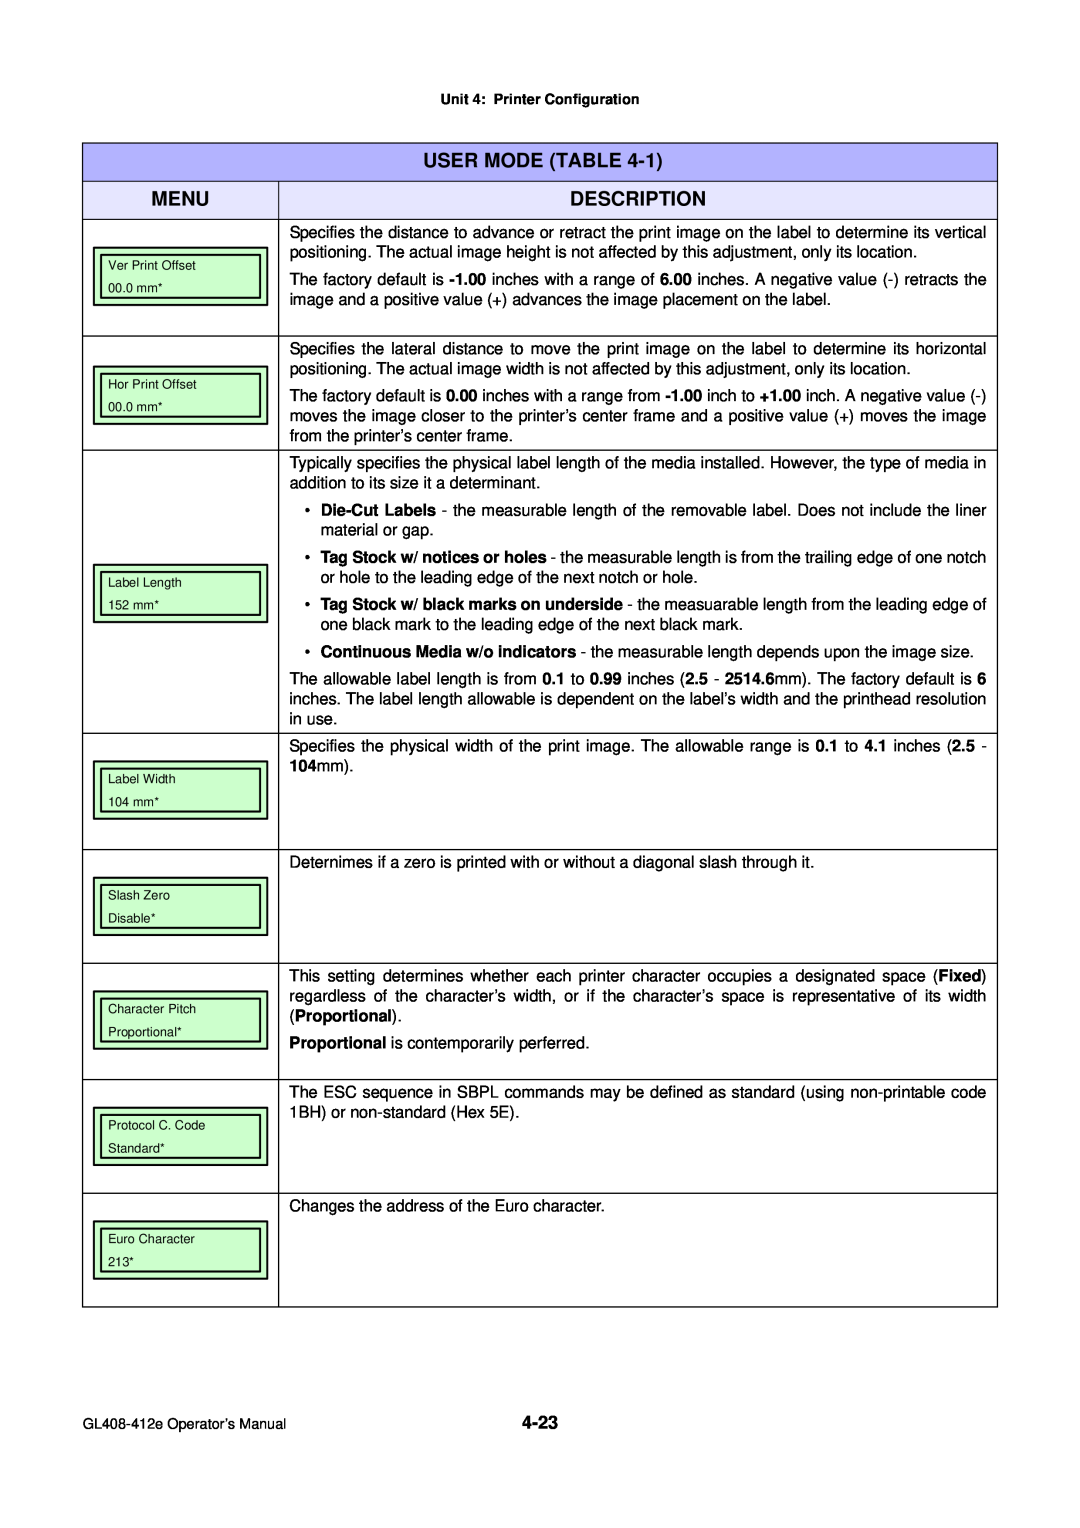 SATO GL4XXE manual Description, User Mode Table, Menu, Proportional 